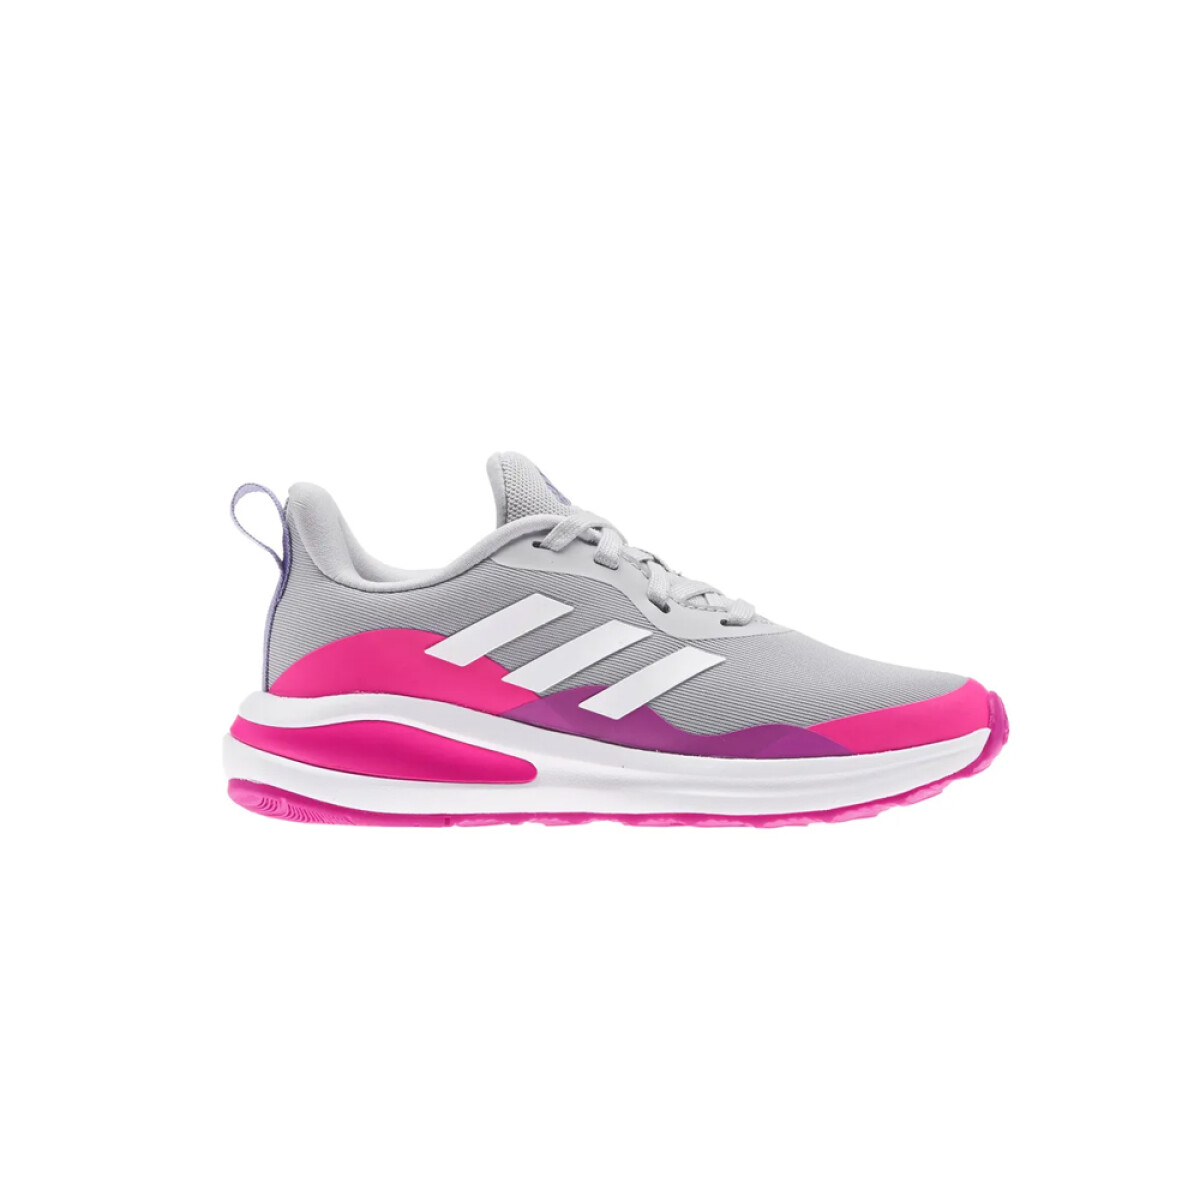 adidas FortaRun K - Grey/Pink/White 